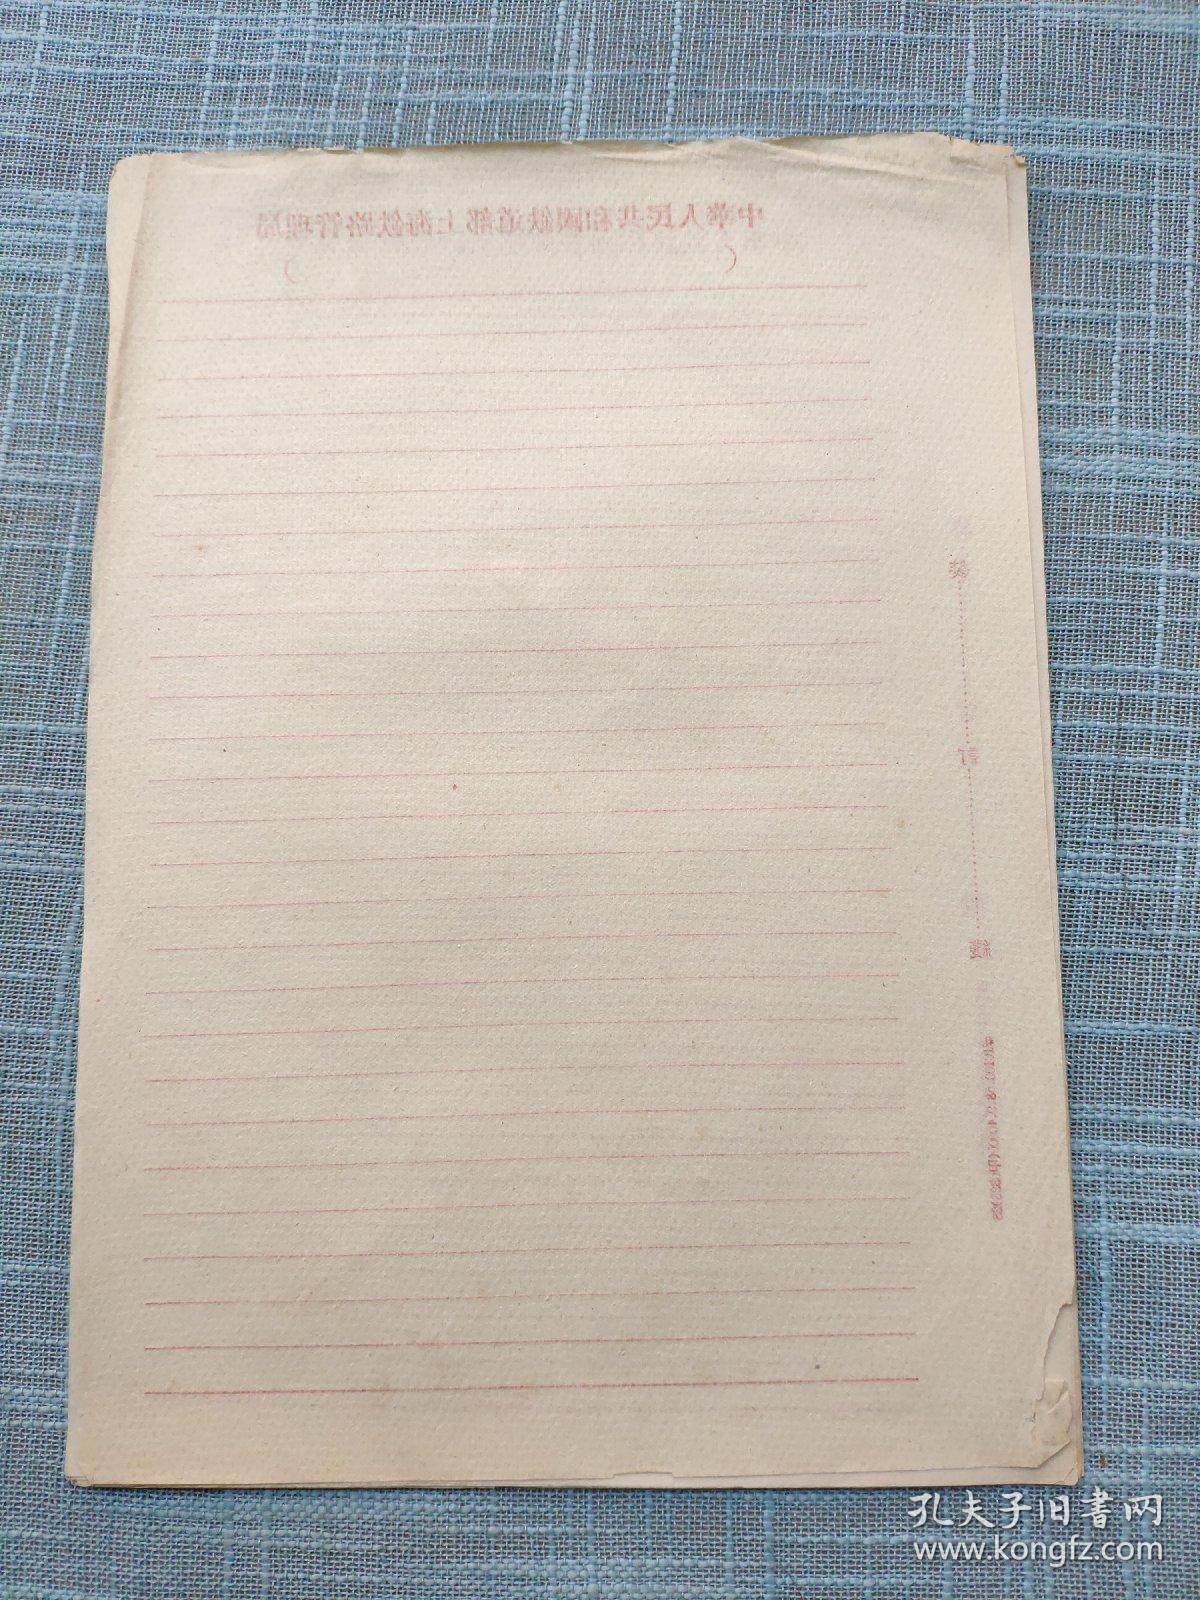 中华人民共和国铁道部上海铁路管理局空白老信纸7张